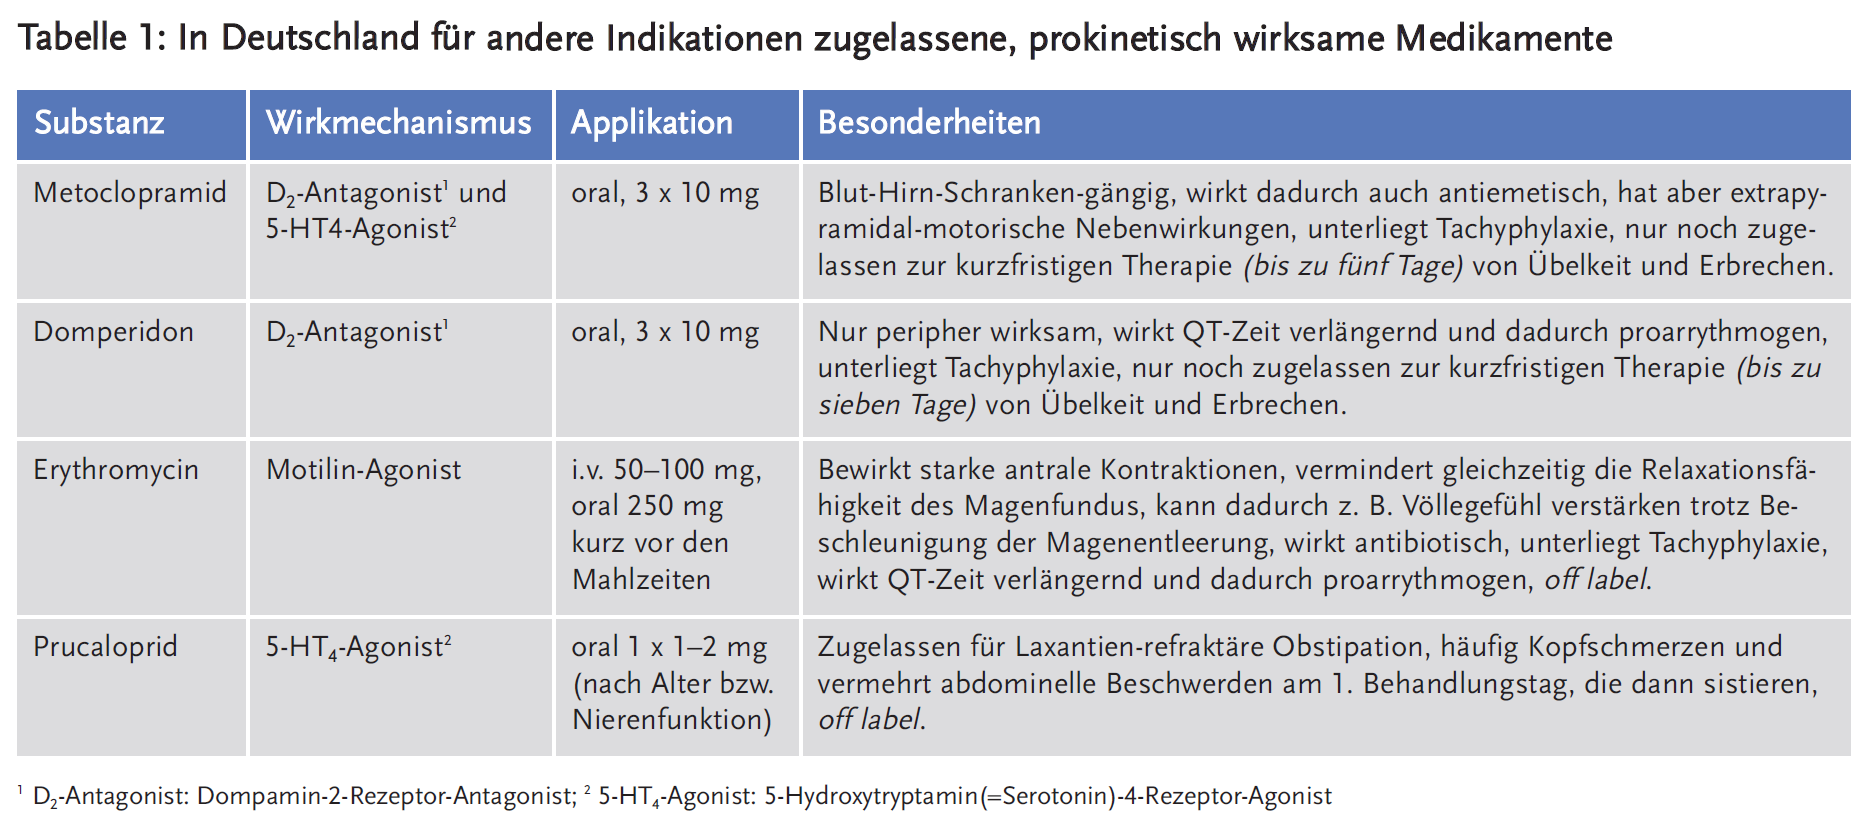 Tabelle 1: In Deutschland für andere Indikationen zugelassene, prokinetisch wirksame Medikamente